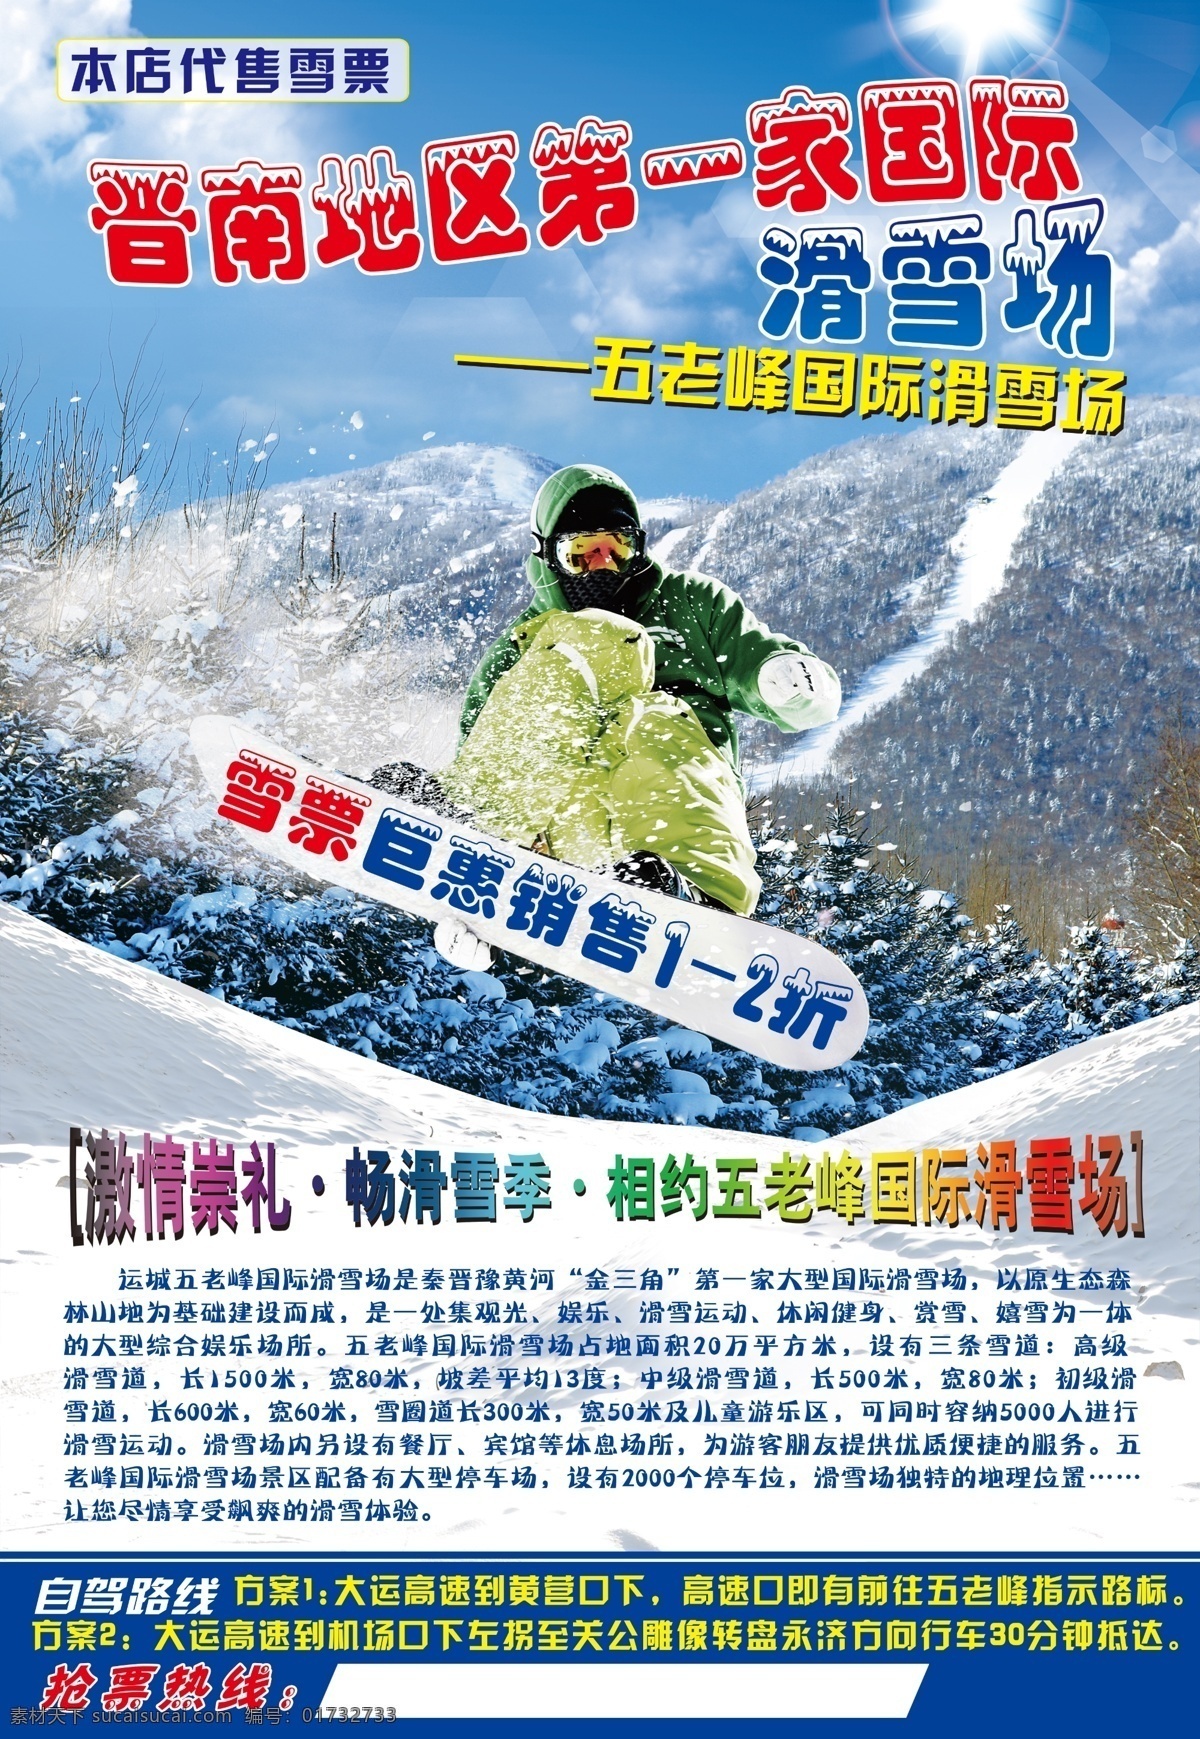 滑雪场 海报 冰天雪地 滑雪 滑雪运动 圣诞树 松树 雪松 冬季运动 滑雪运动员 滑雪道 开发式滑雪场 露天滑雪场 原创设计 原创海报